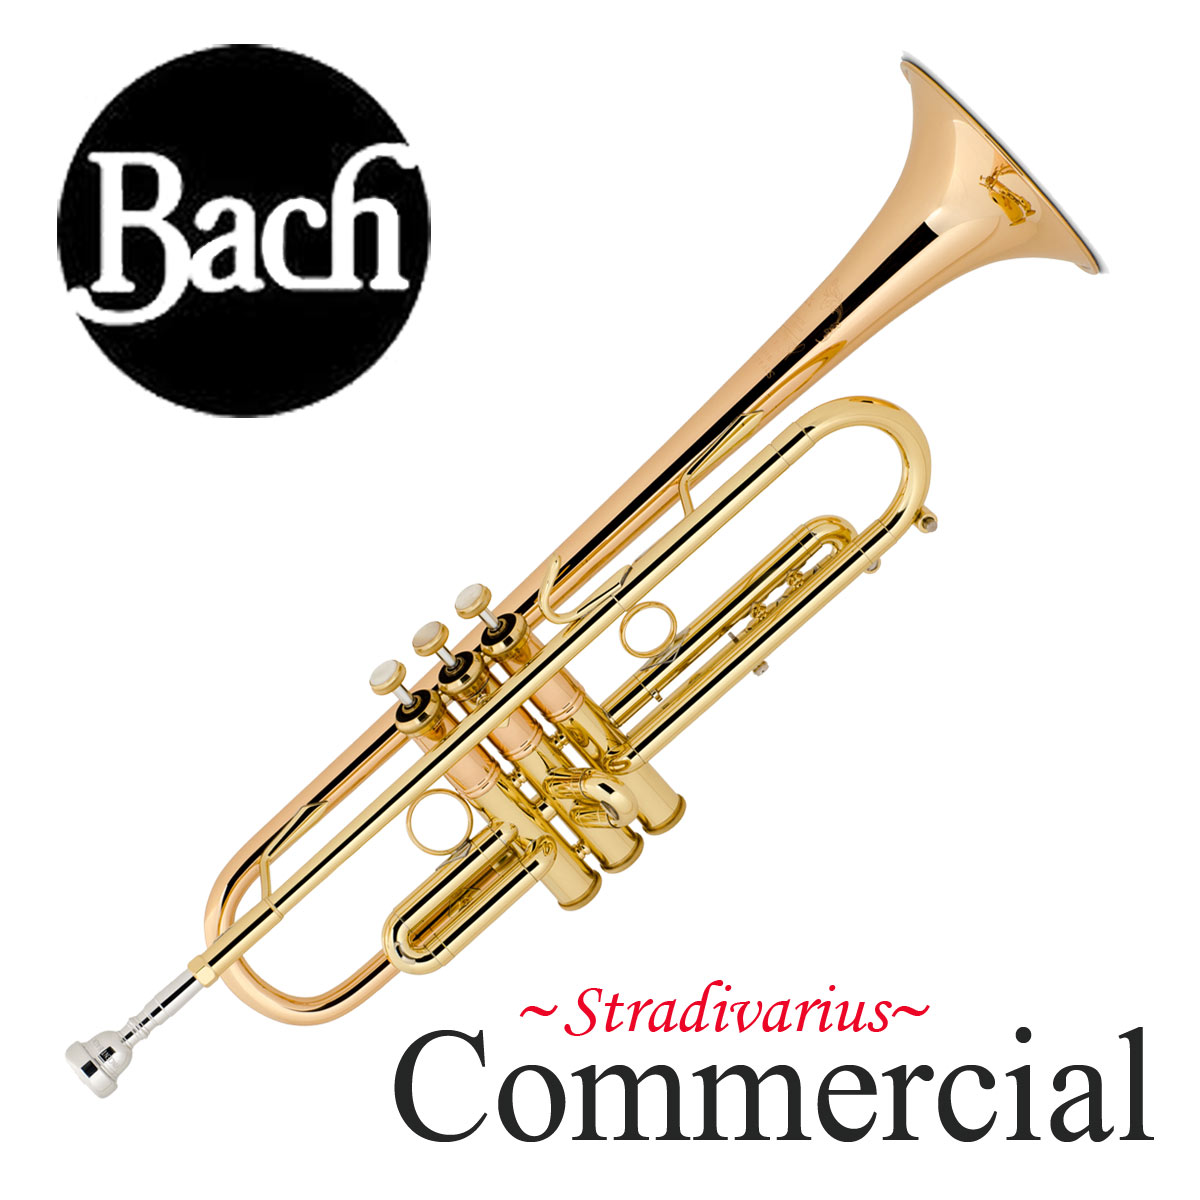 Bach COMMERCIAL バック LT1901B CL コマーシャル ラッカー仕上げ B♭トランペット【お取り寄せ】 イシバシ楽器